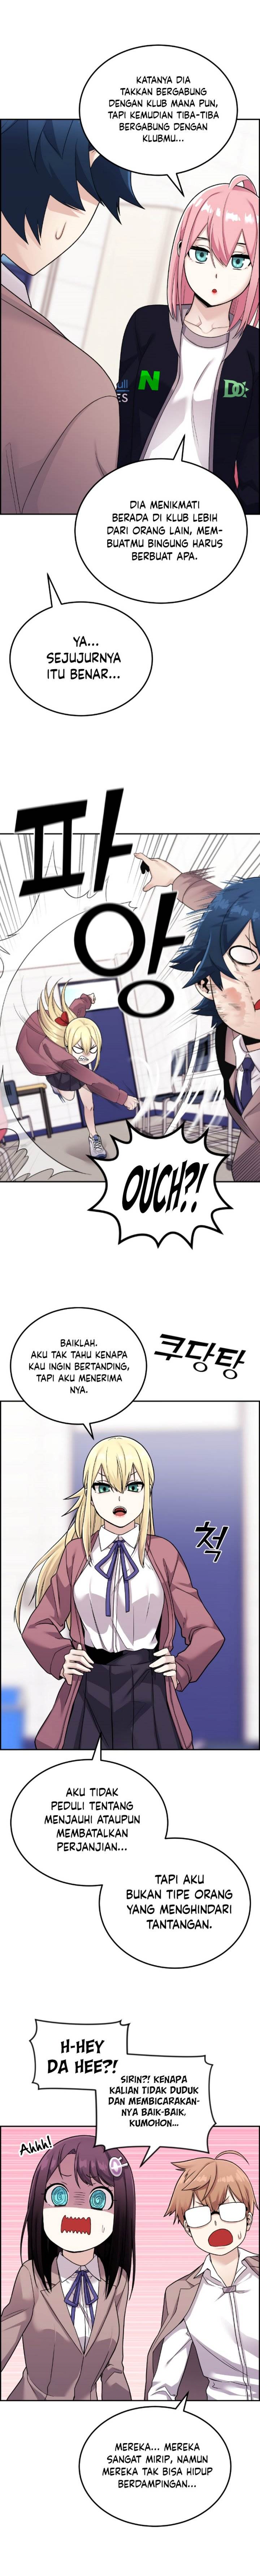 Webtoon Character Na Kang Lim Chapter 20